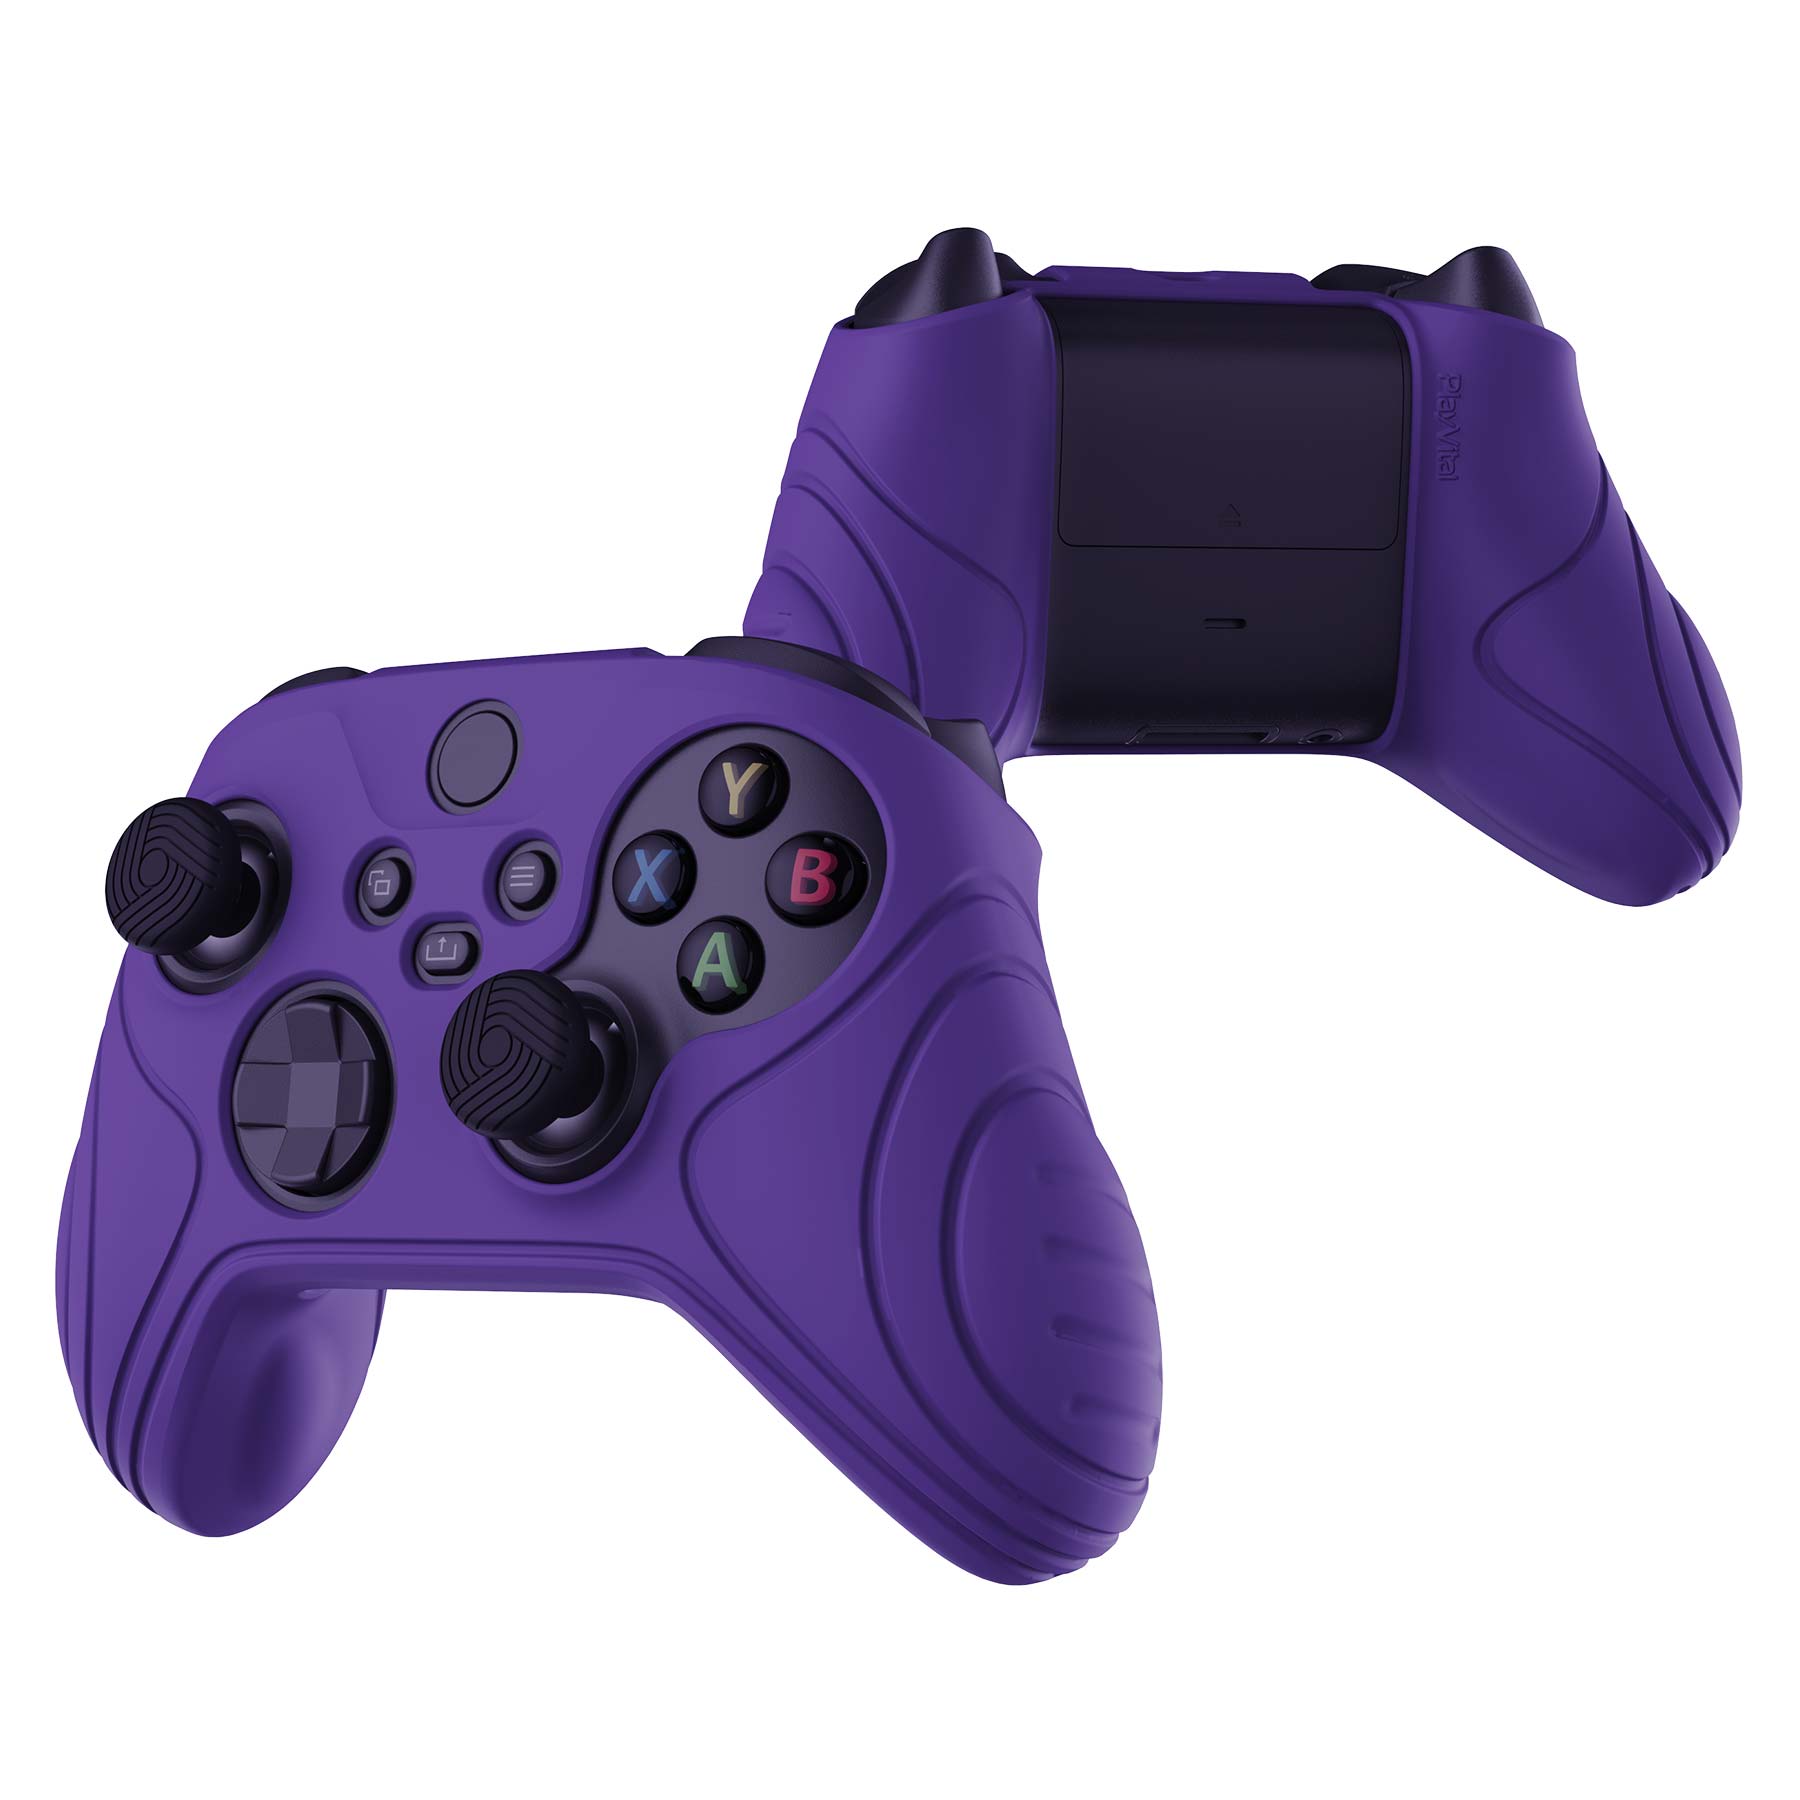 STEALTH Casque de Jeu Ranger Camo Violet, Compatible avec Xbox One, Series  S/X, PS4/5, Switch, PC, Mobile et Tablette avec de puissants Haut-parleurs